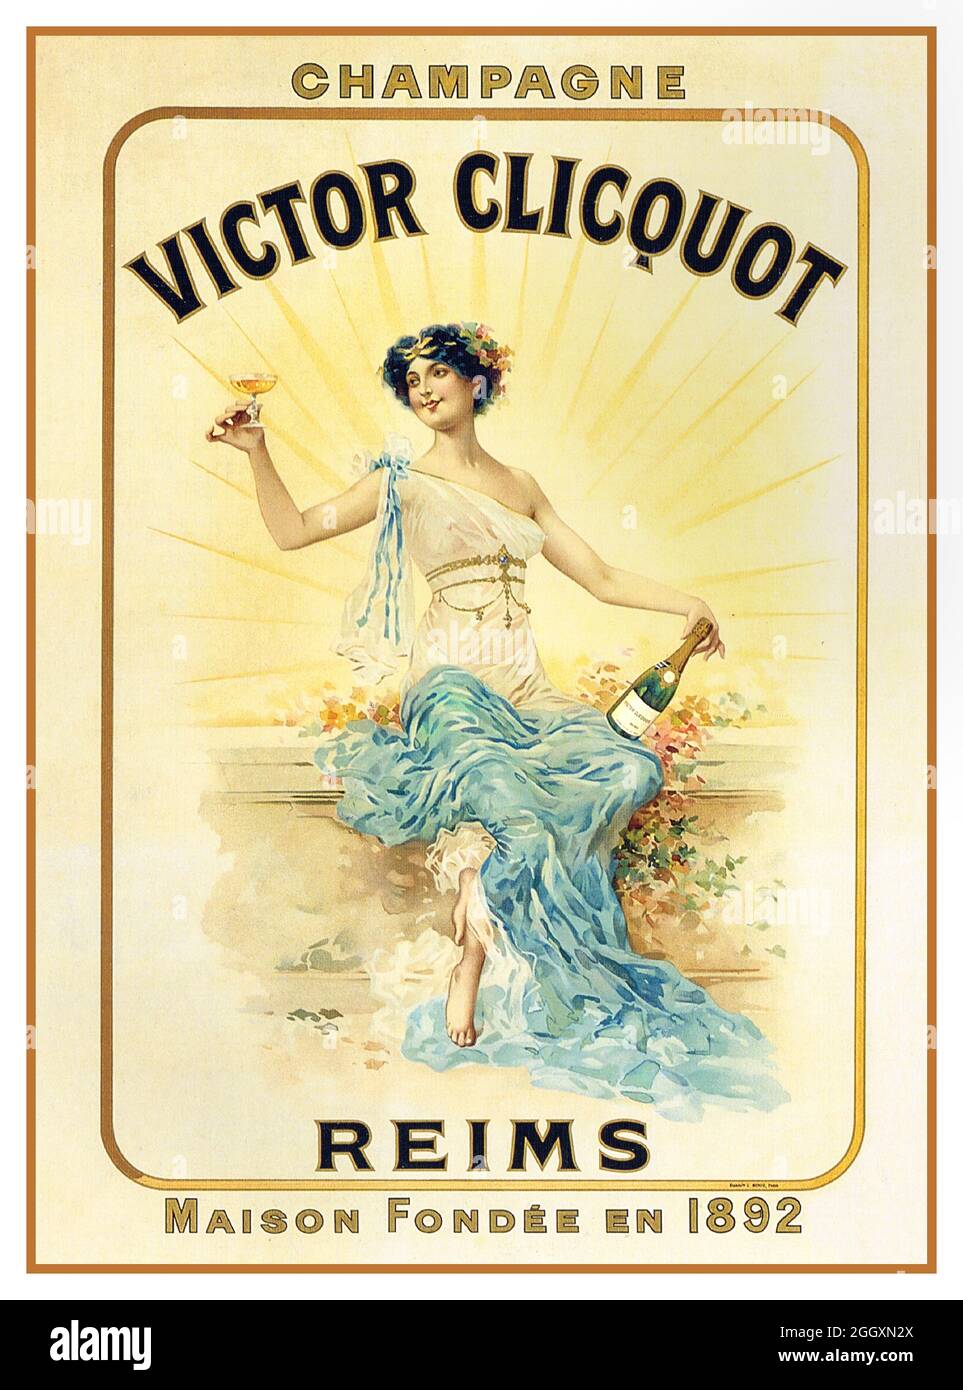 Französisches Champagner-Werbeplakat des Jahrgangs 1900 für VICTOR CLICQUOT Champagne Reims Frankreich Stockfoto